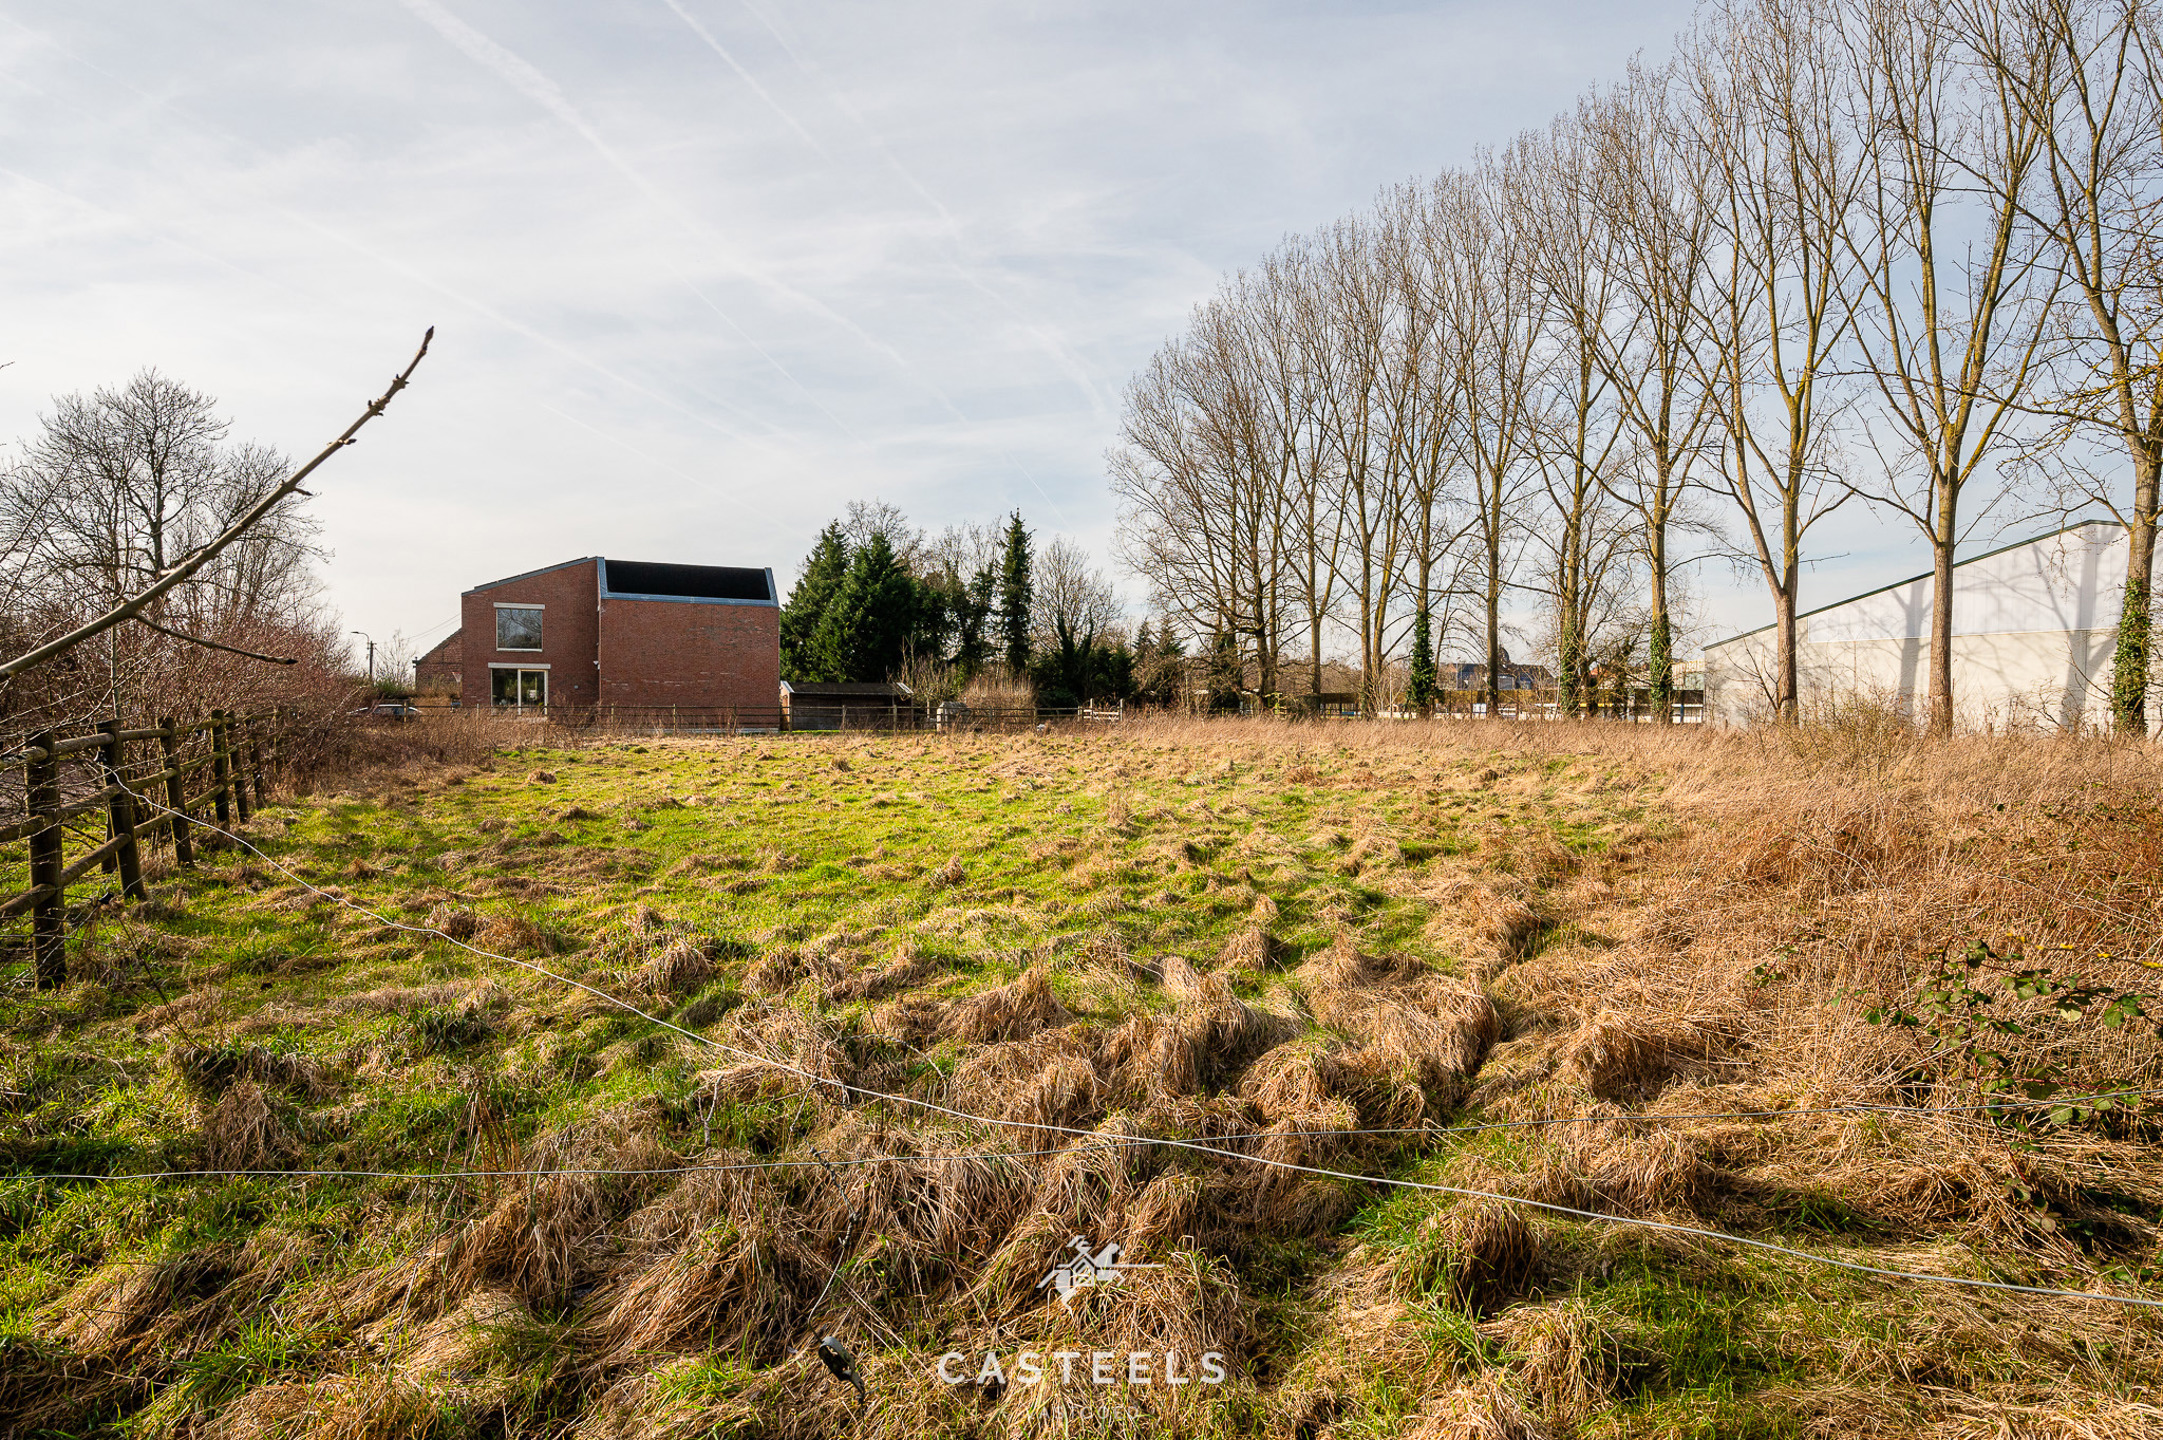 Afbeelding  - Vastgoed dat raakt in regio Oost-Vlaanderen